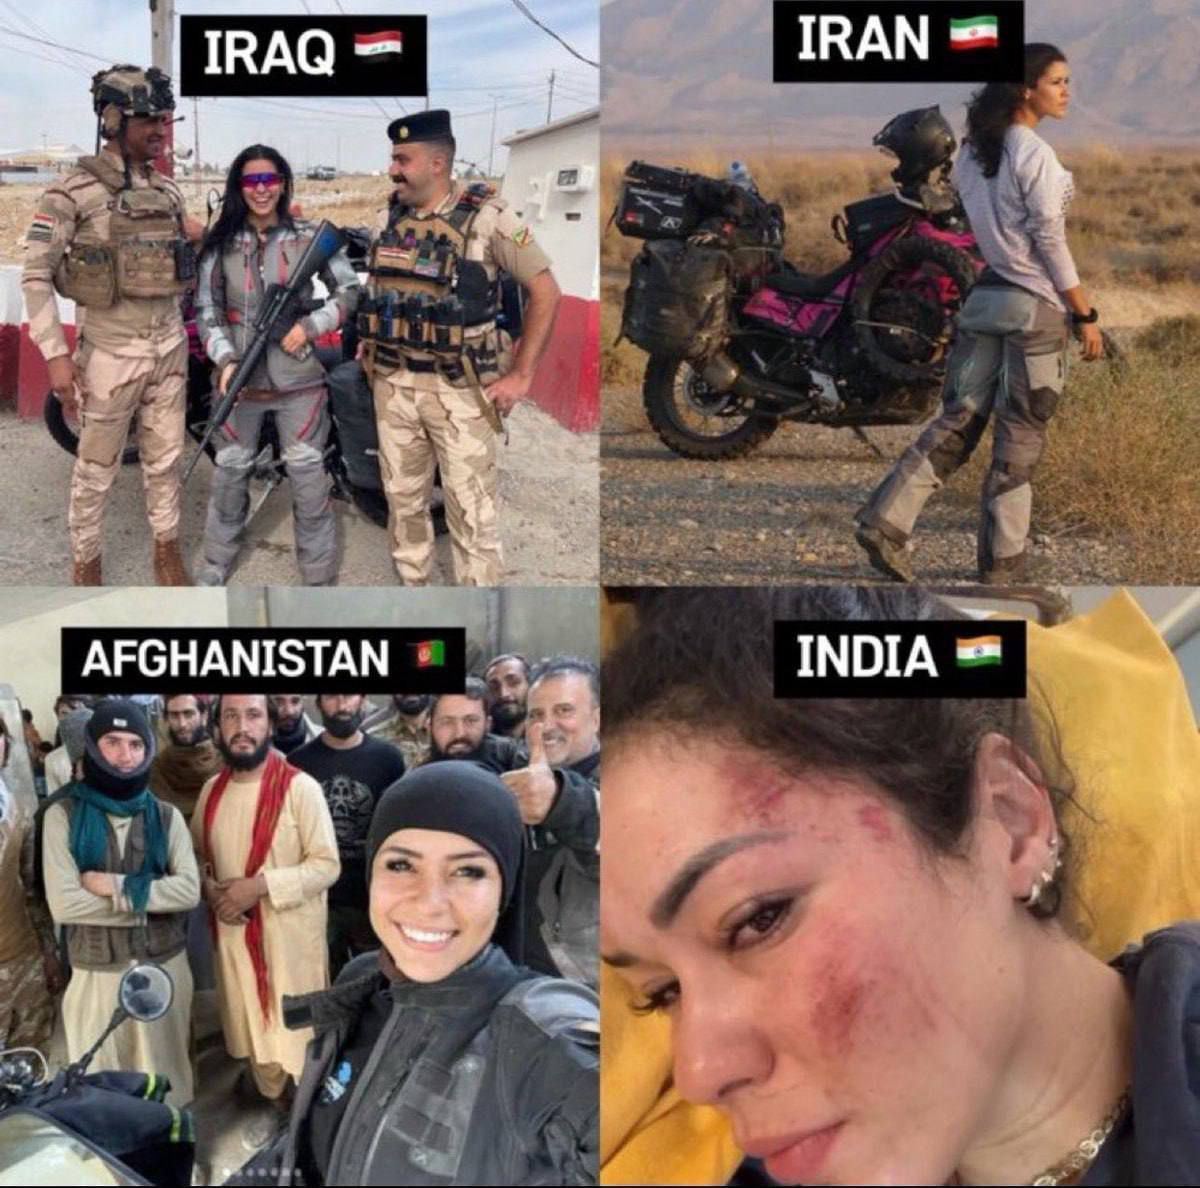 تصاویر وضعیت زن یک گردشگر خارجی در ایران، عراق و افغانستان | جلوی چشمان شوهرش مورد تجاوز ۷ هندی قرار گرفت!